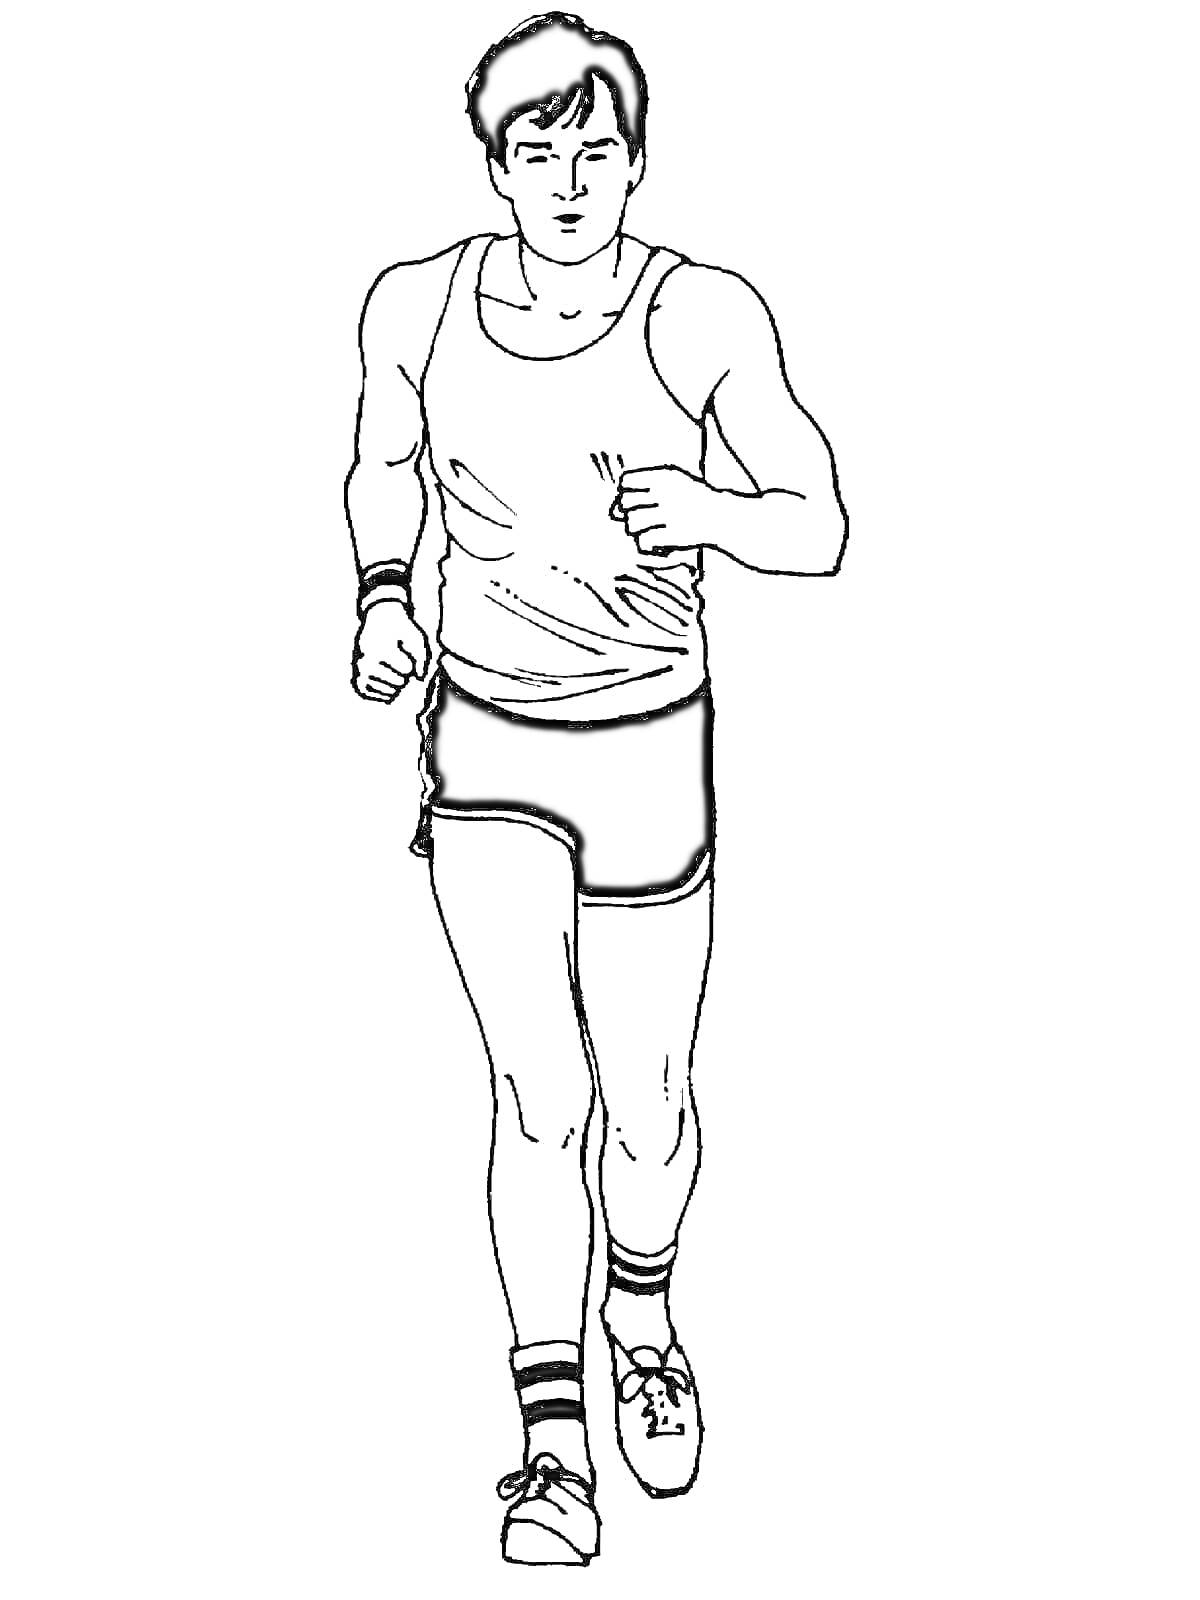 Раскраска Человек в спортивной одежде в процессе бега, черно-белый контур